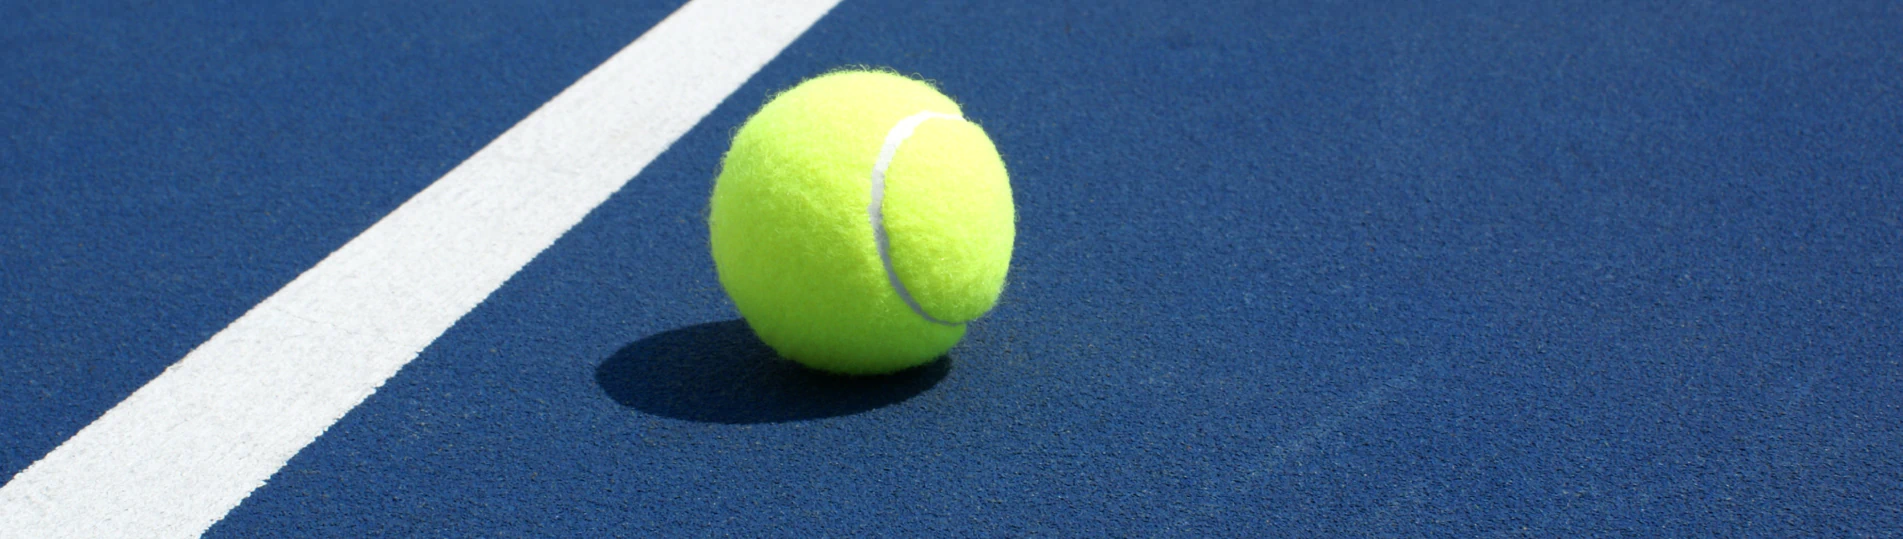 close up tennis court